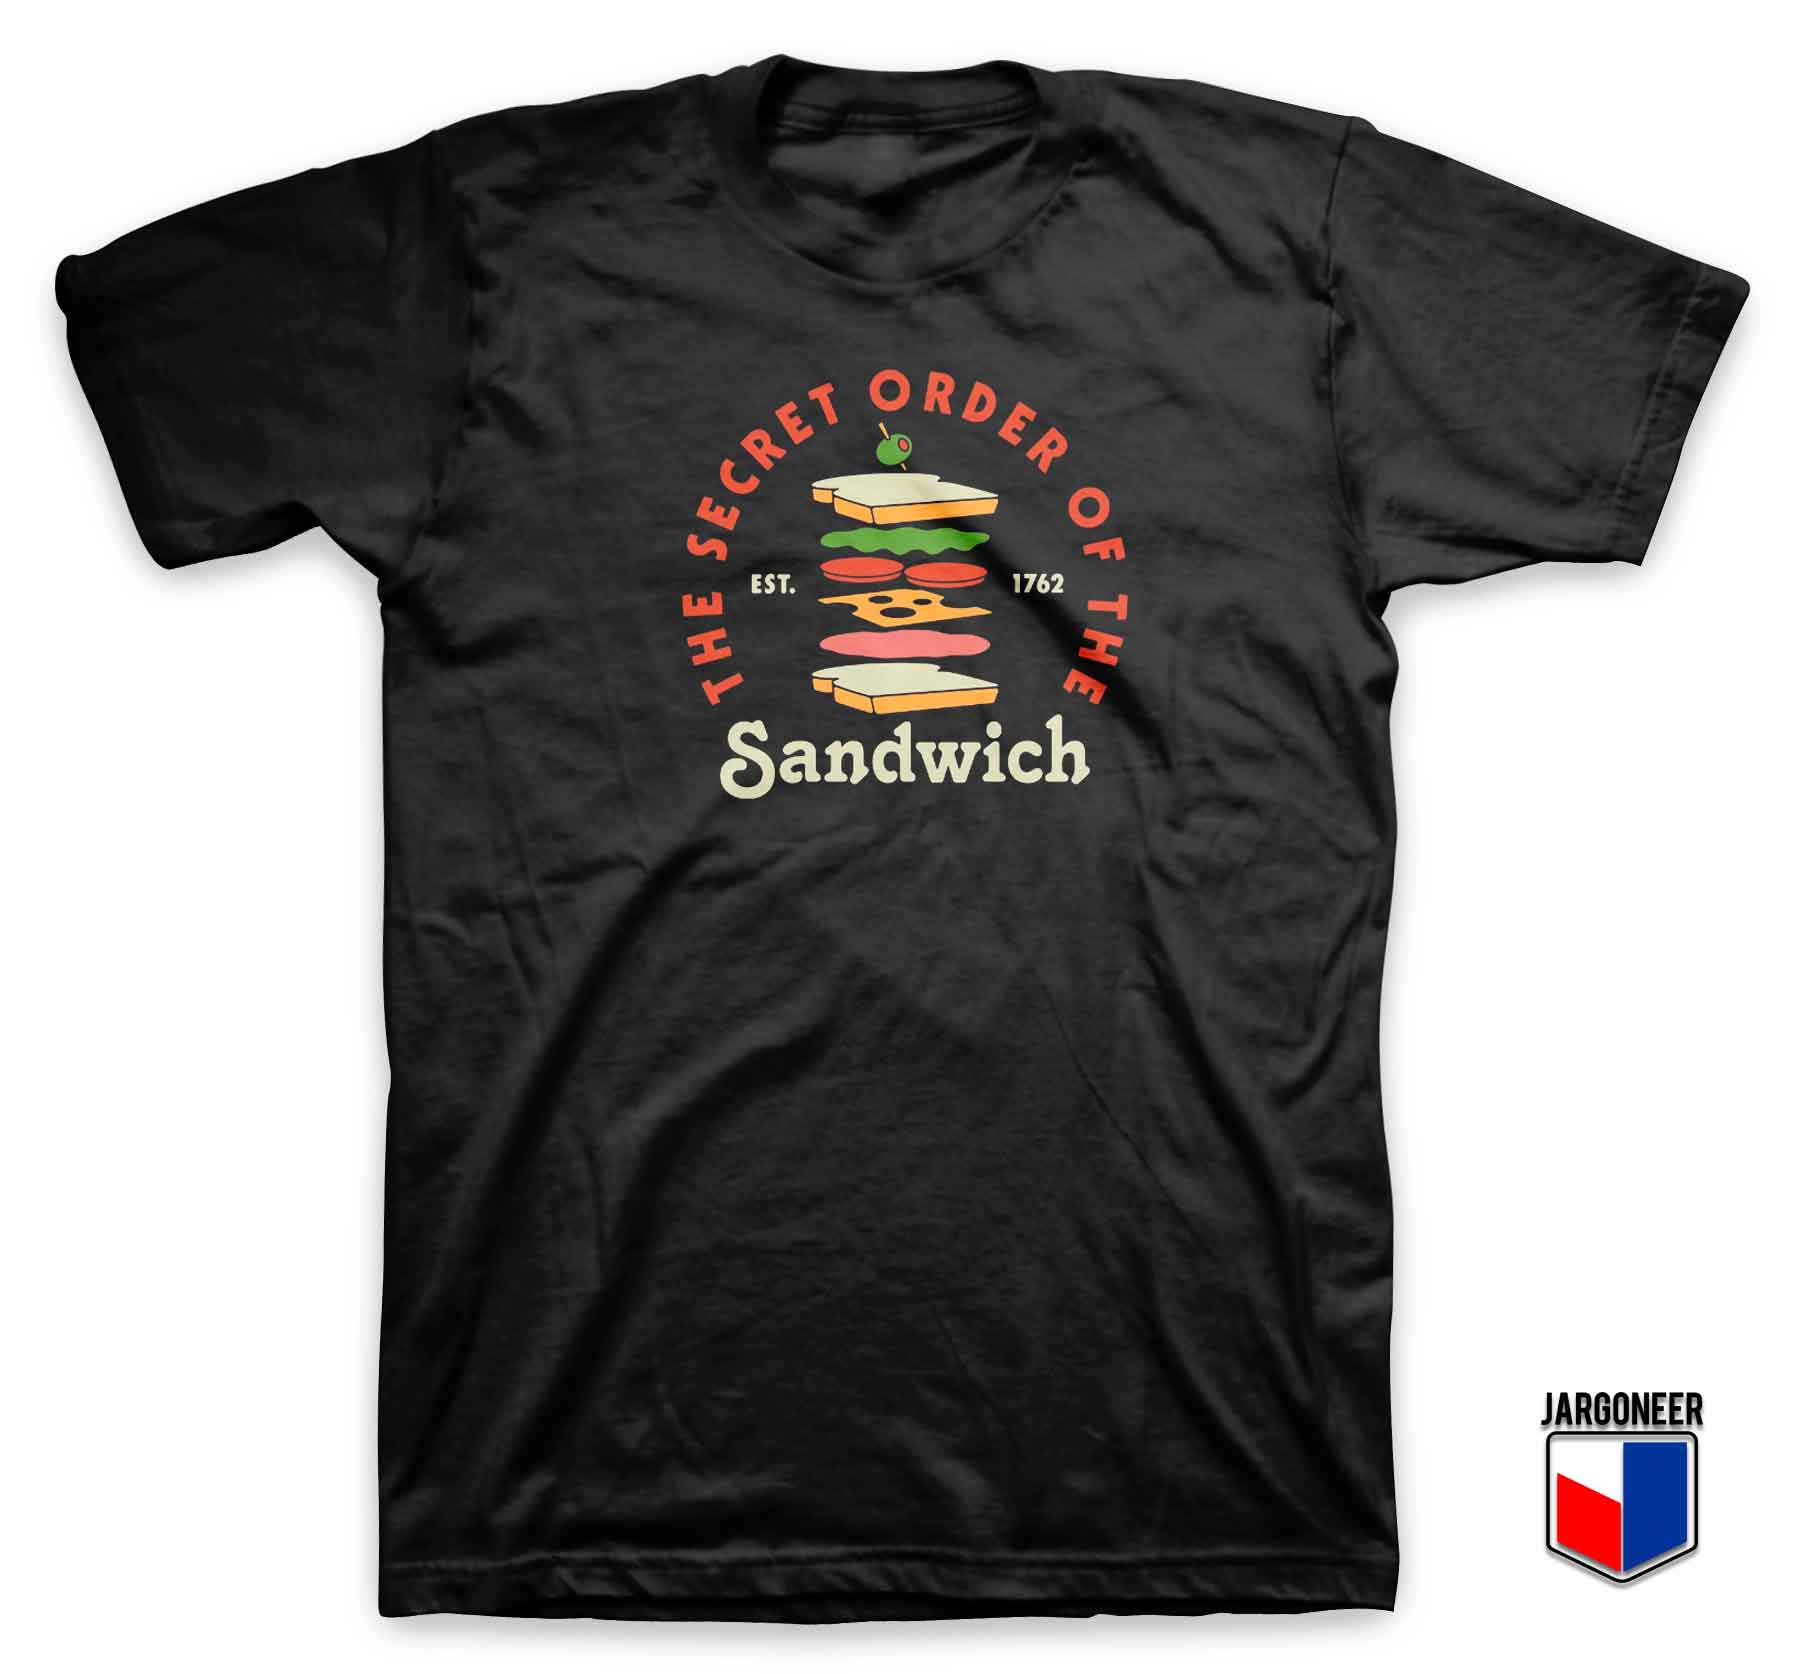 Sandwich Club T Shirt - Shop Unique Graphic Cool Shirt Designs